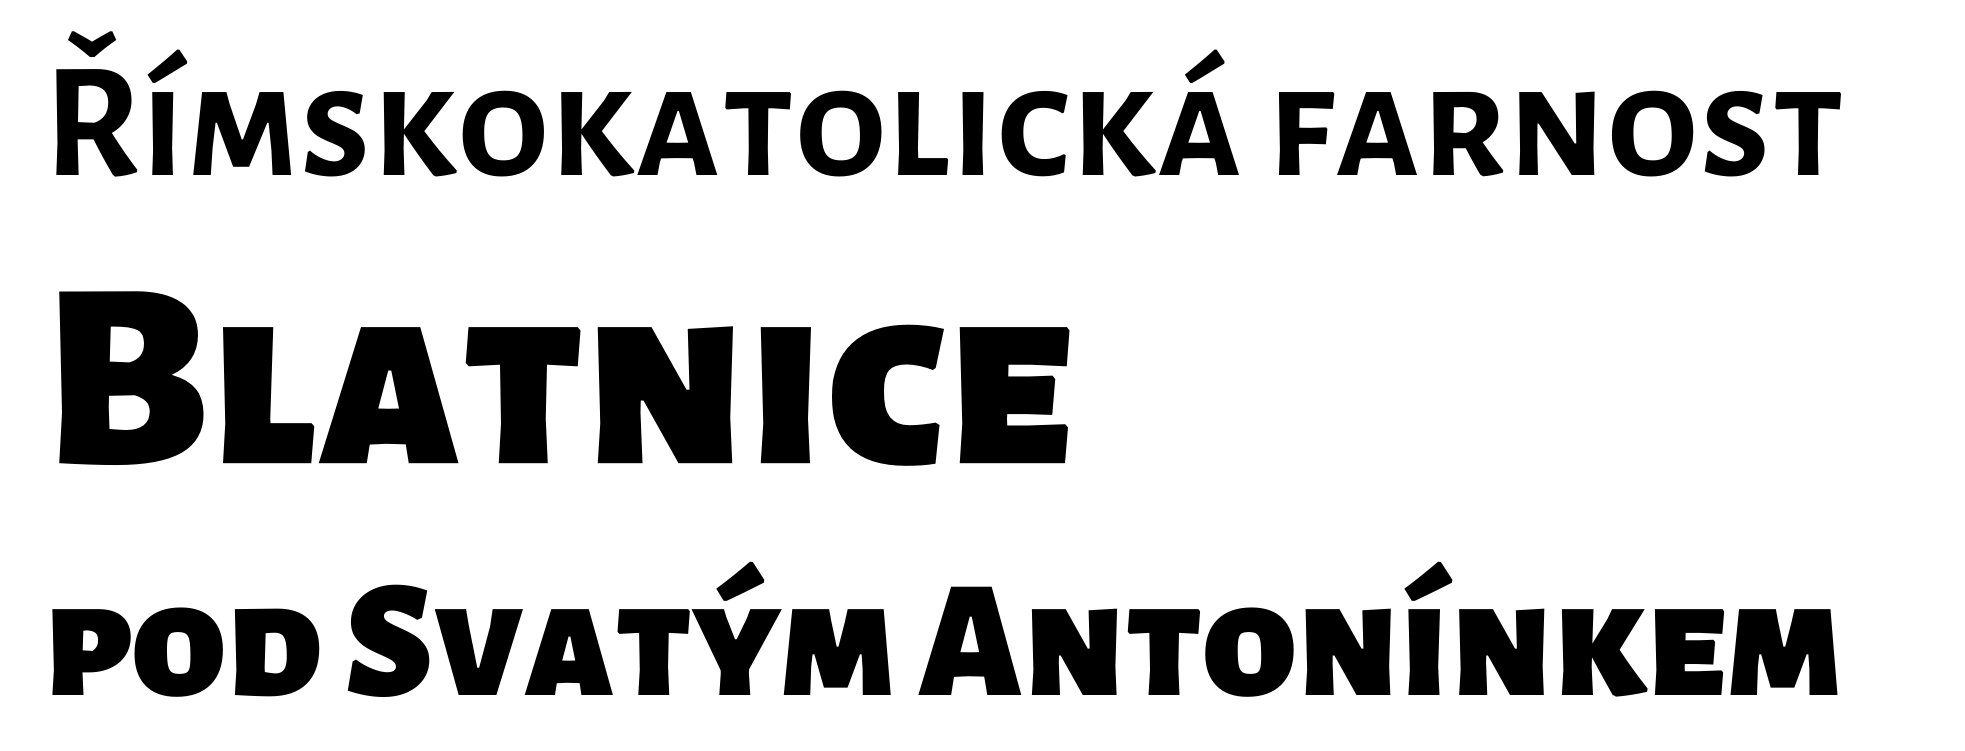 Logo Jak podpořit Antonínek - Římskokatolická farnost Blatnice pod Svatým Antonínkem